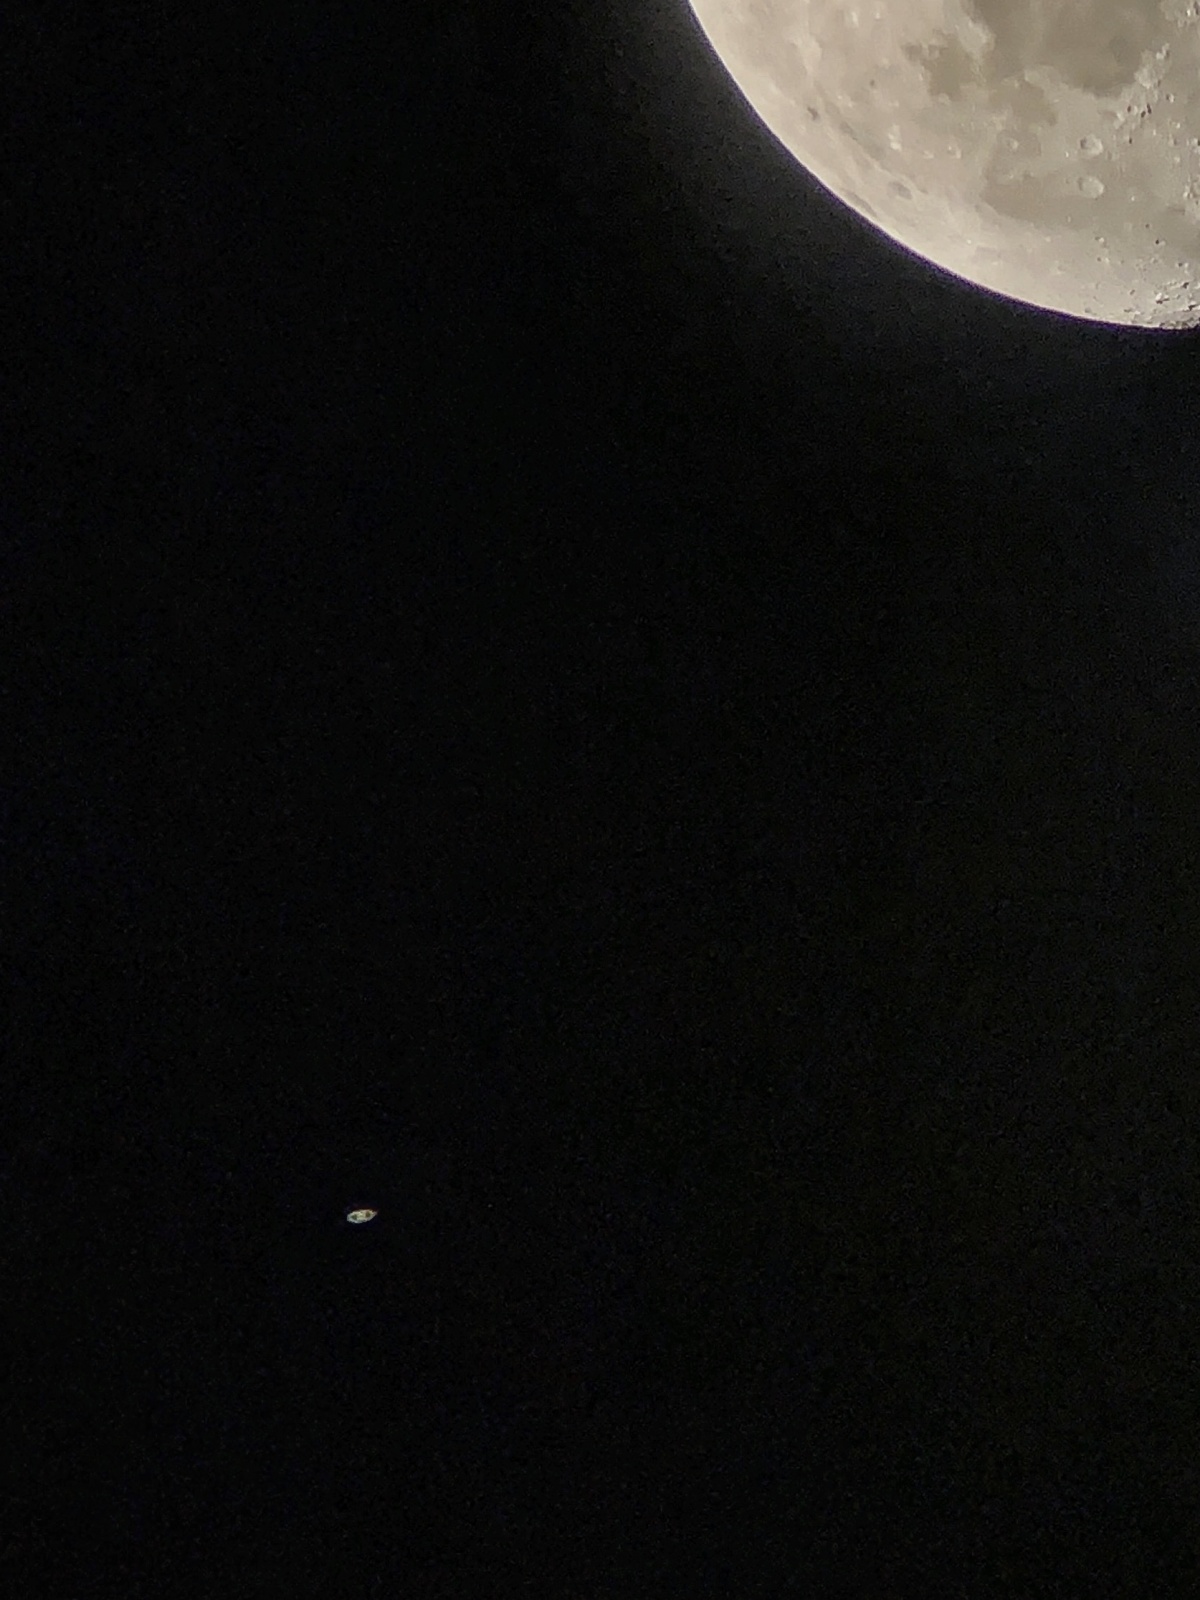 2019/9/8 土星合月 – 有趣天文奇观